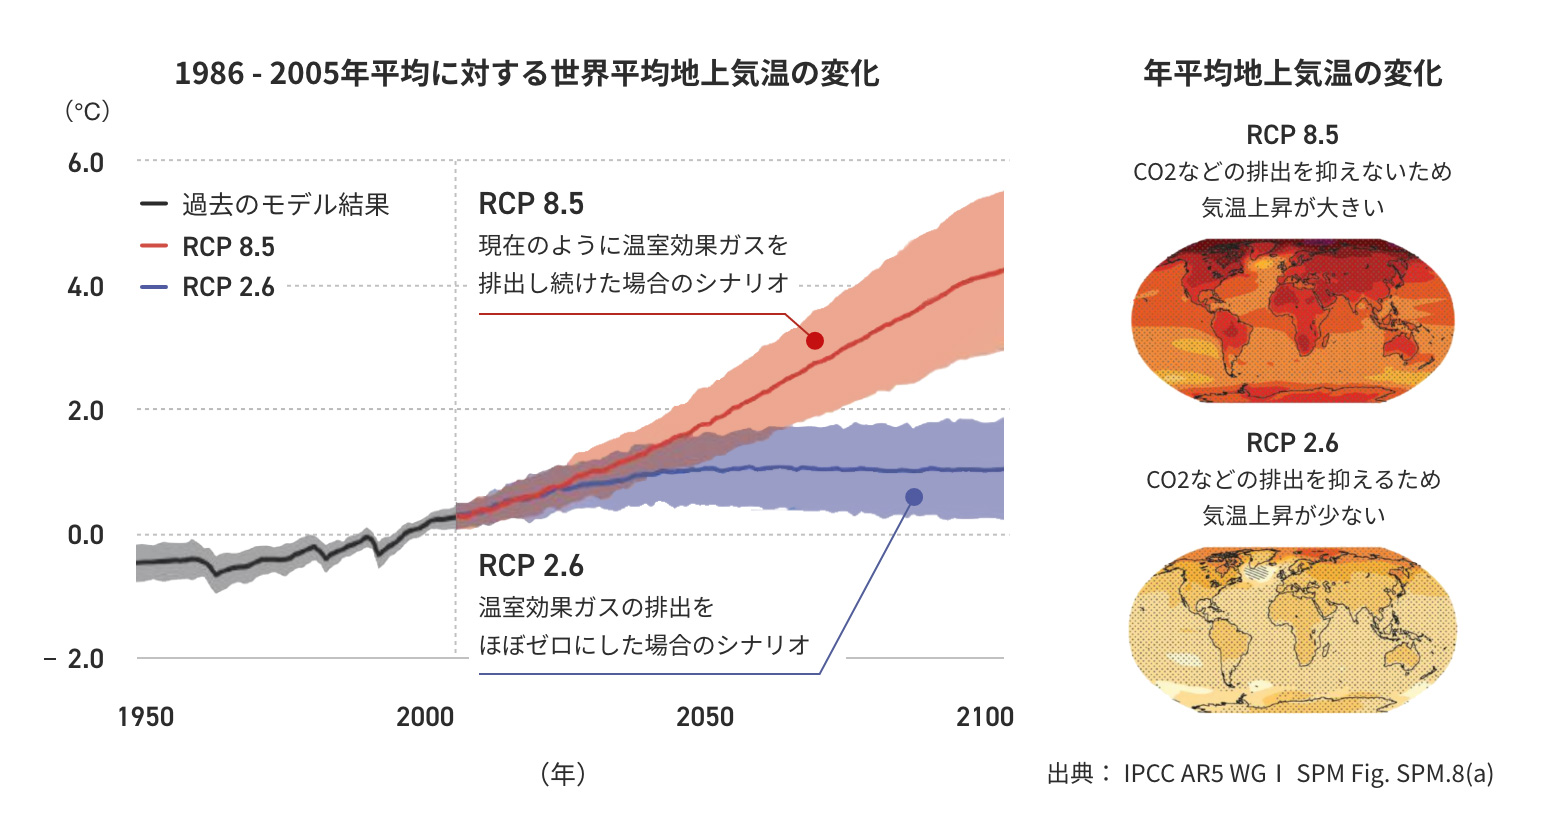 世界の平均地上気温の変化：1950年から2100年までの過去の平均気温と将来的な予想気温を、1986年から2005年までの平均気温からの差として、CO2などの排出を抑えた場合と抑えない場合との２つのシナリオで示したグラフ（※出展：IPCC AR5 WGⅠ SPM Fig. SPM.8(a)）